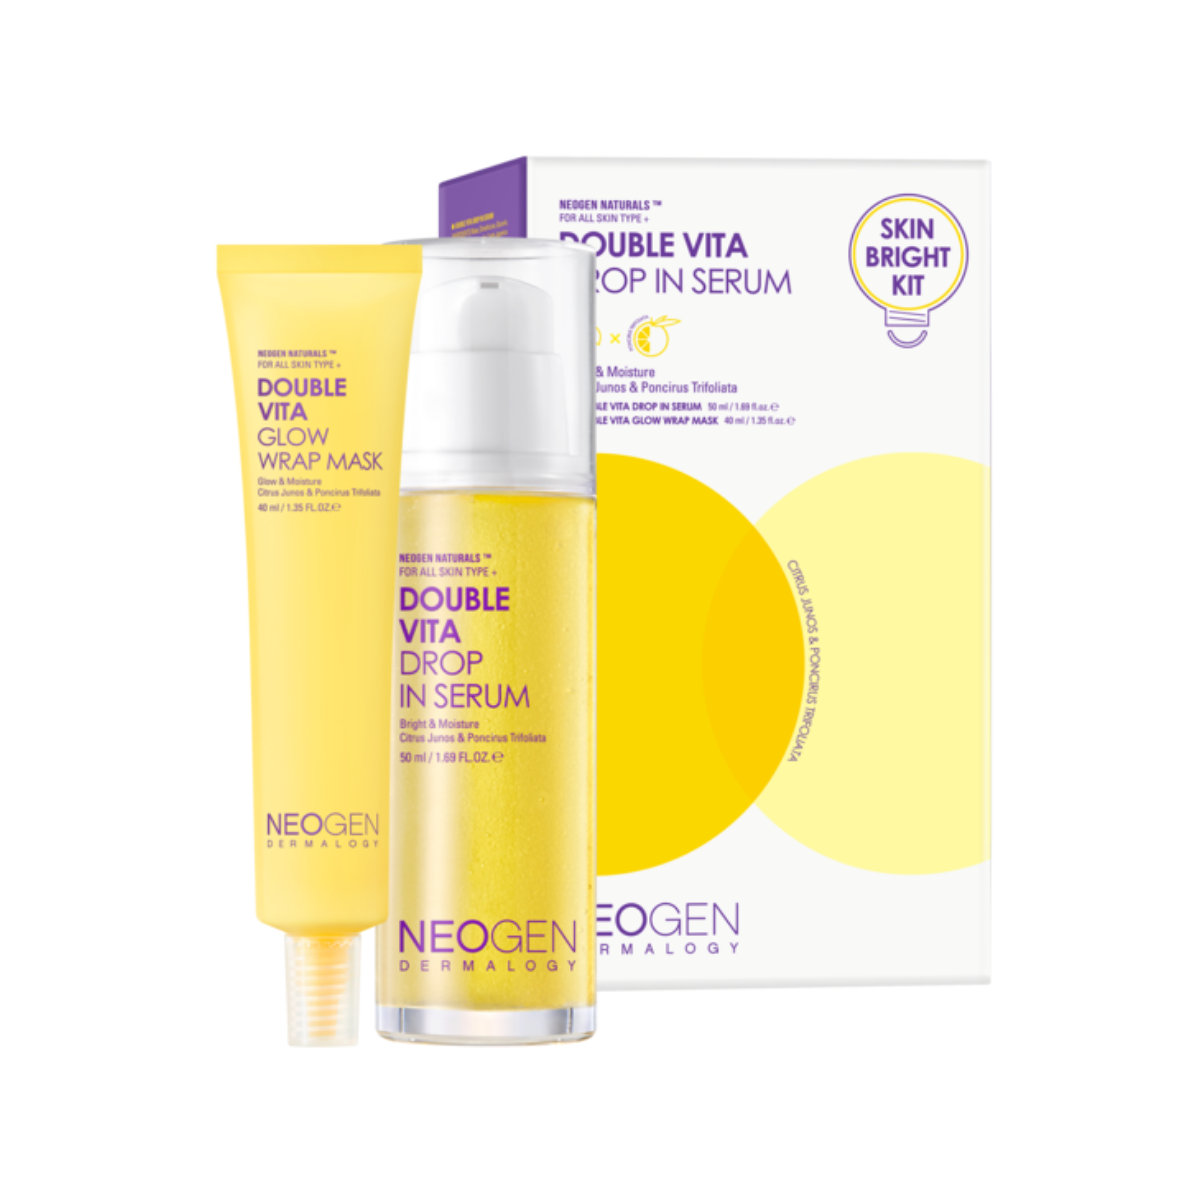 NEOGEN - Double Vita Drop in Serum Skin Bright Kit